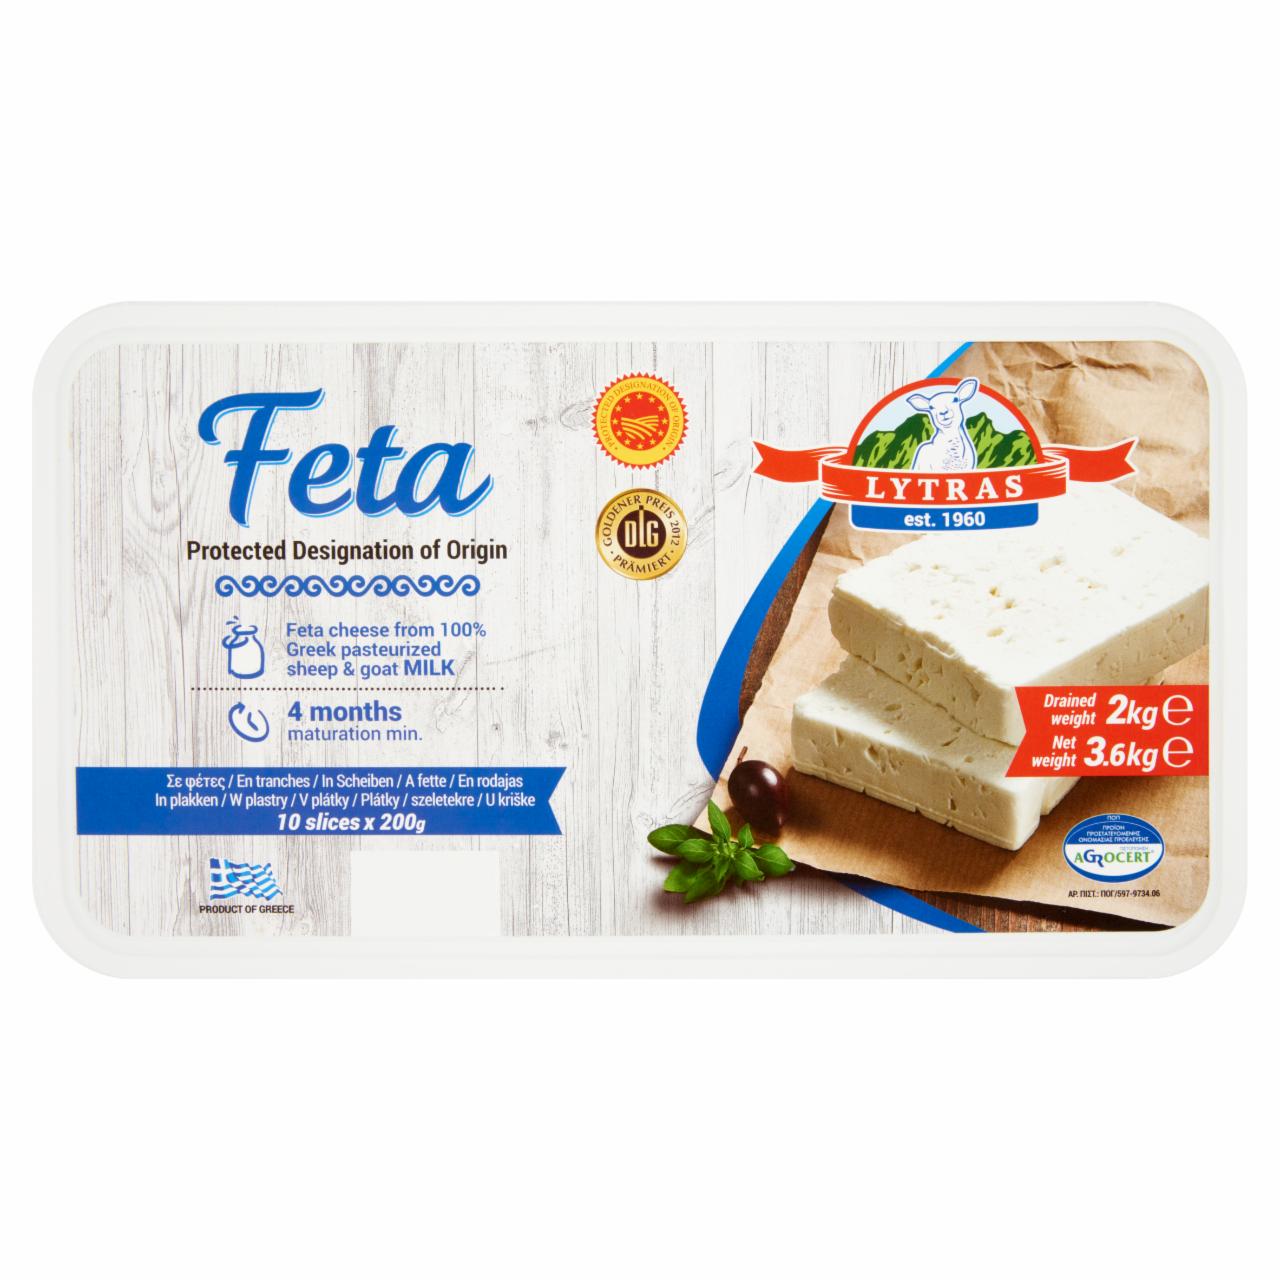 Képek - Lytras zsíros lágy feta sajt sós lében 2 kg